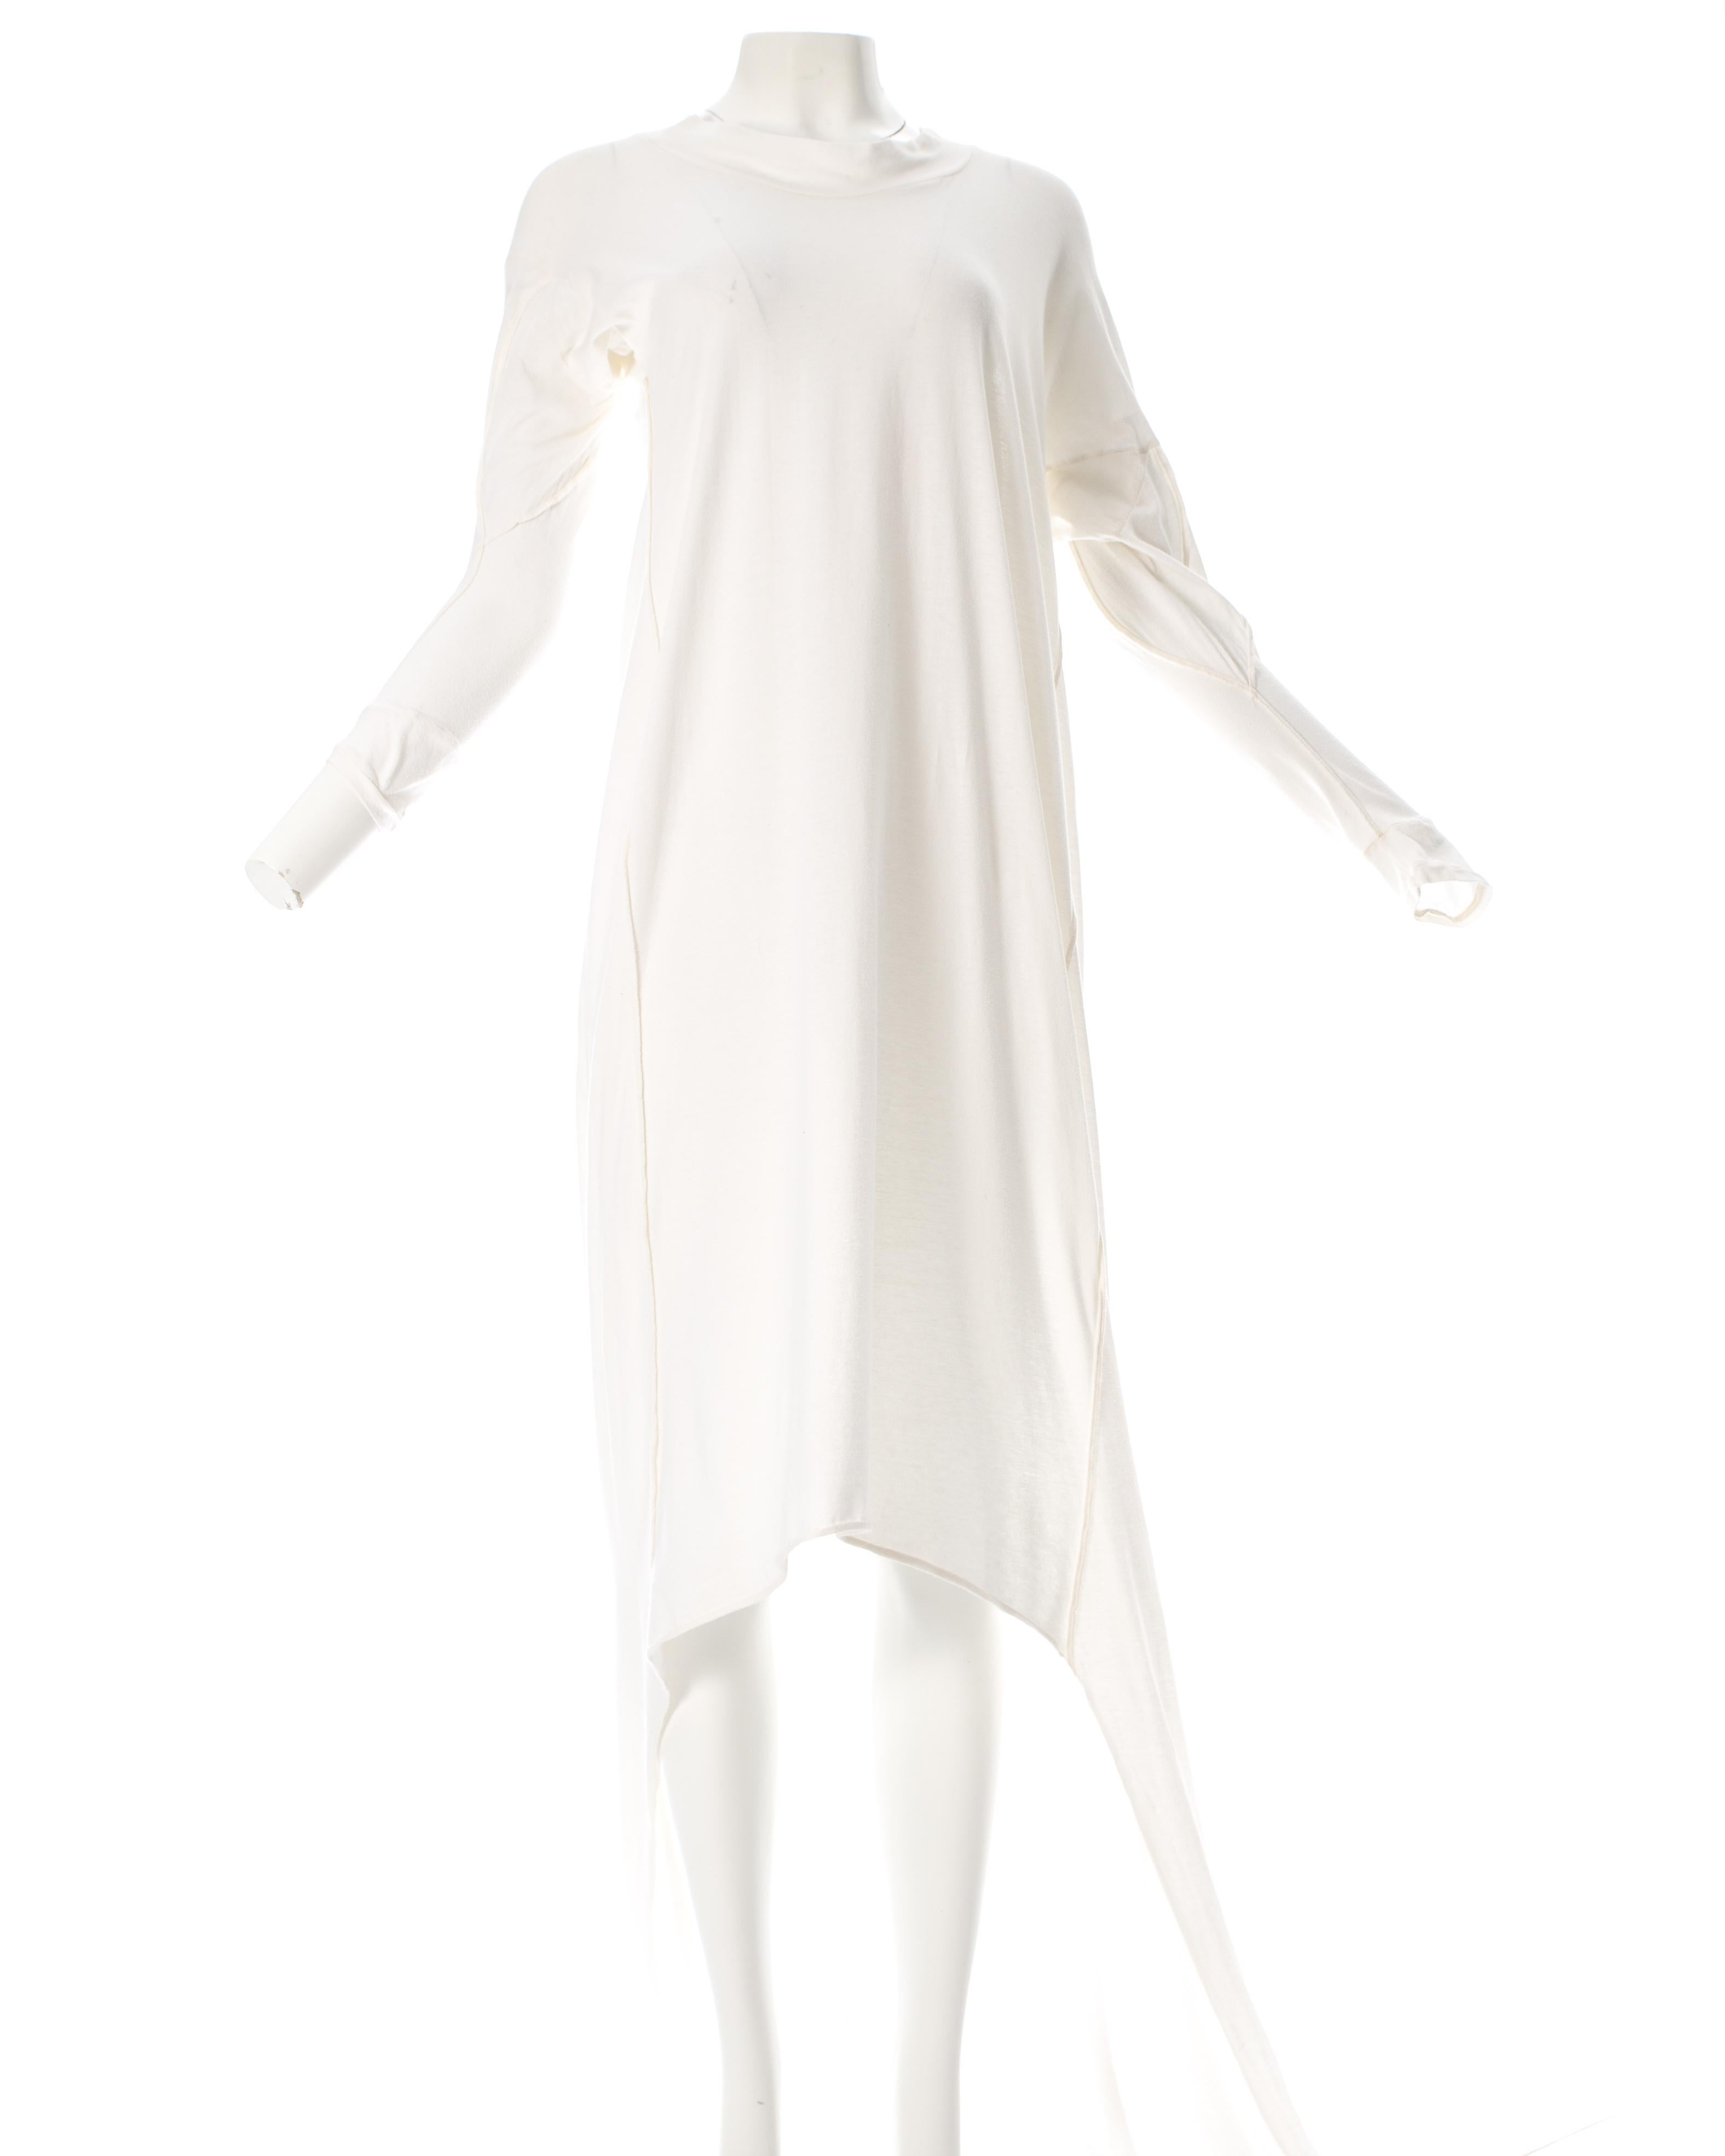 white toga dress